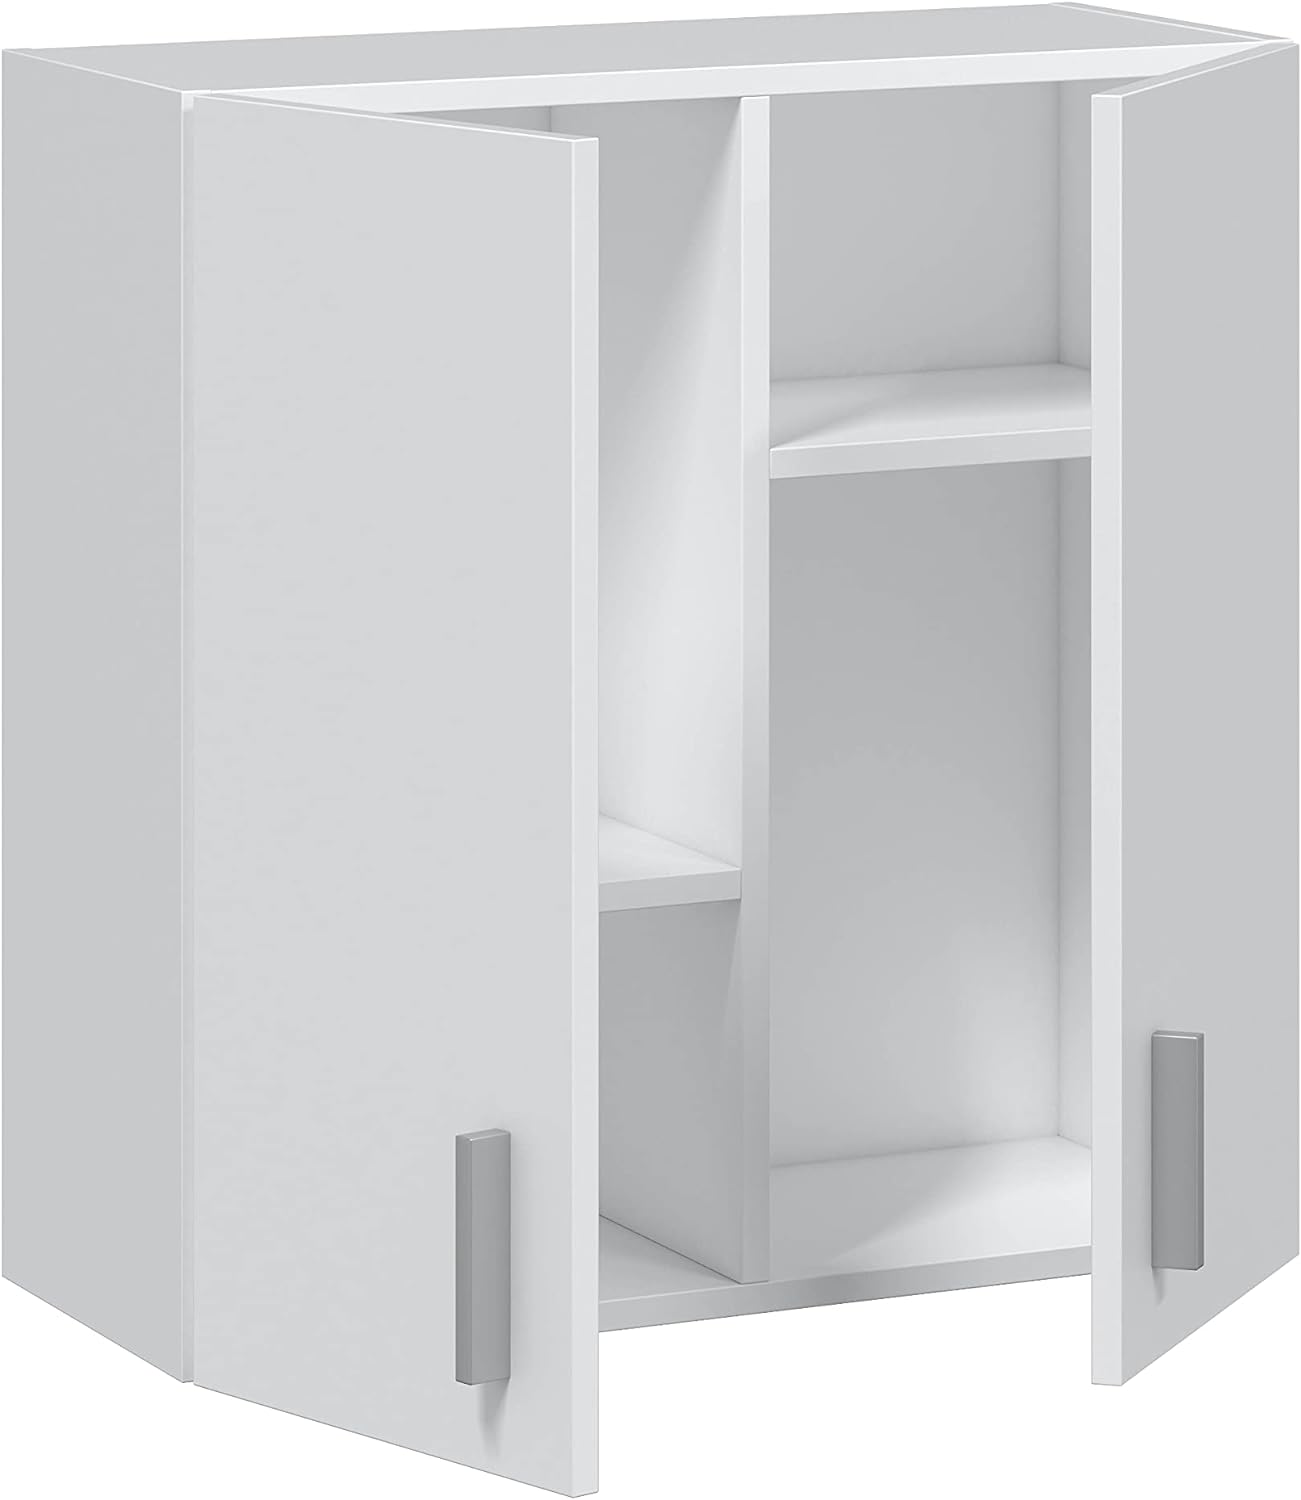 Vicco armario Ingo blanco - 2 puertas armario multiusos universal